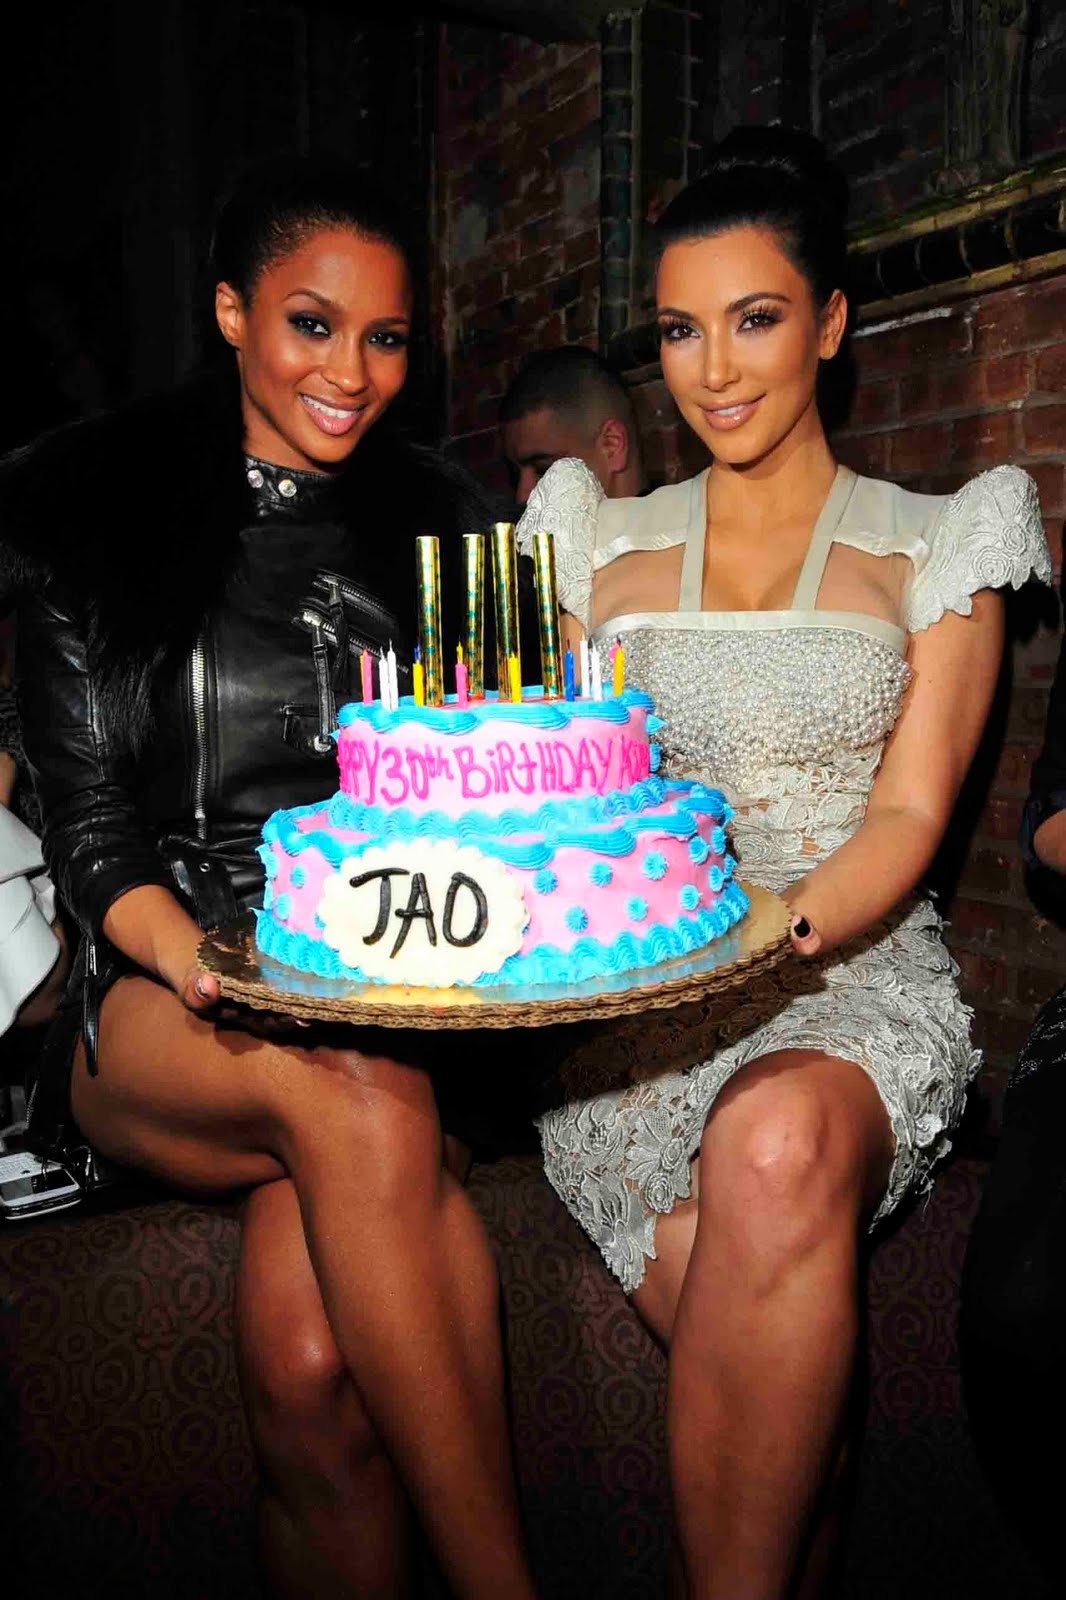 http://3.bp.blogspot.com/_ZZ-CqtHjAnk/TL3quhbd34I/AAAAAAAB-Wg/lj0Gv7GYEMA/s1600/Ciara+With+Kim+Kardashian.jpg